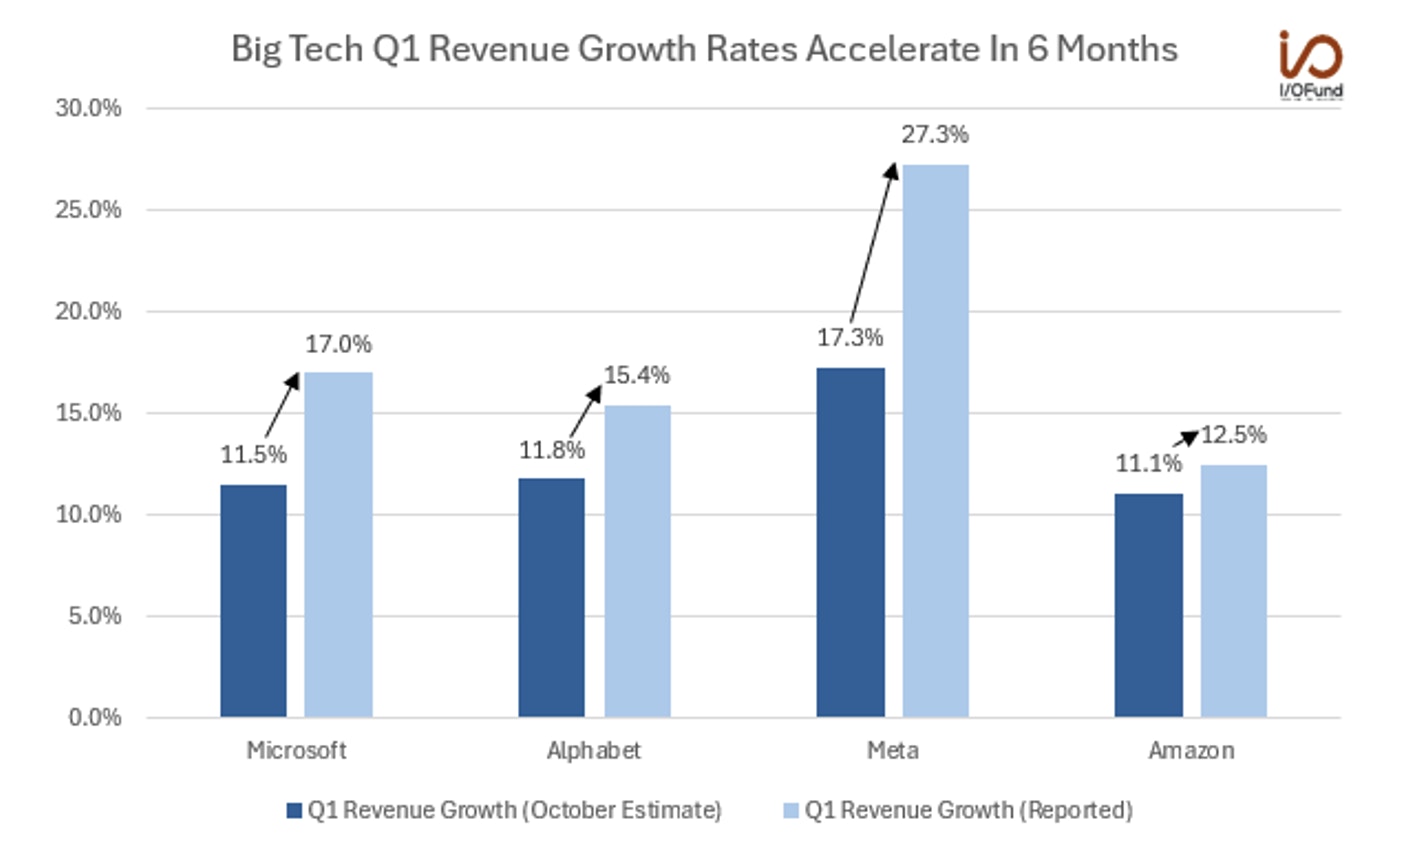 Big Tech Revenue Growth Acceleration 